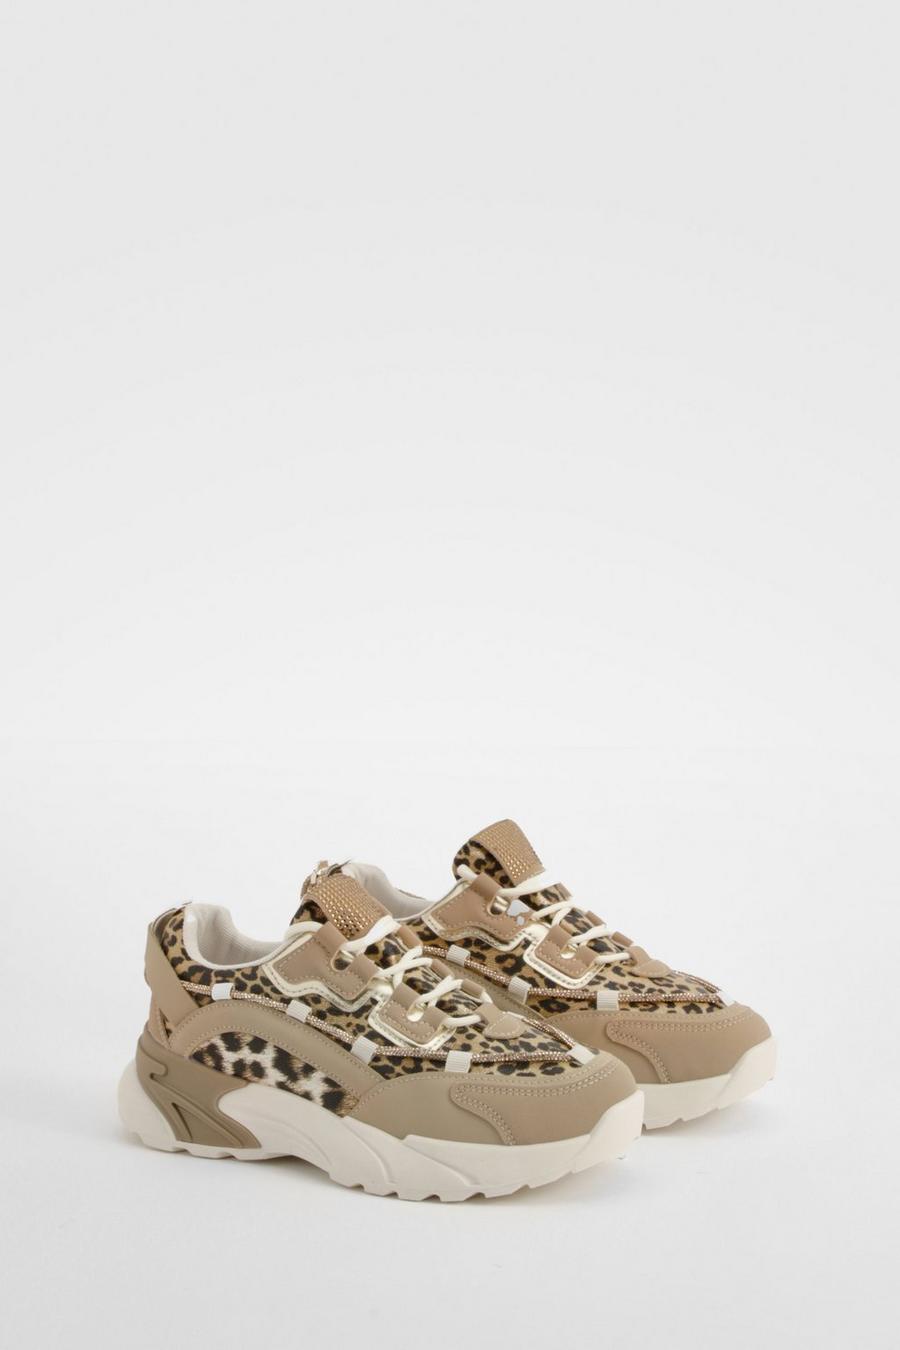 Zapatillas deportivas gruesas con estampado de leopardo, Leopard